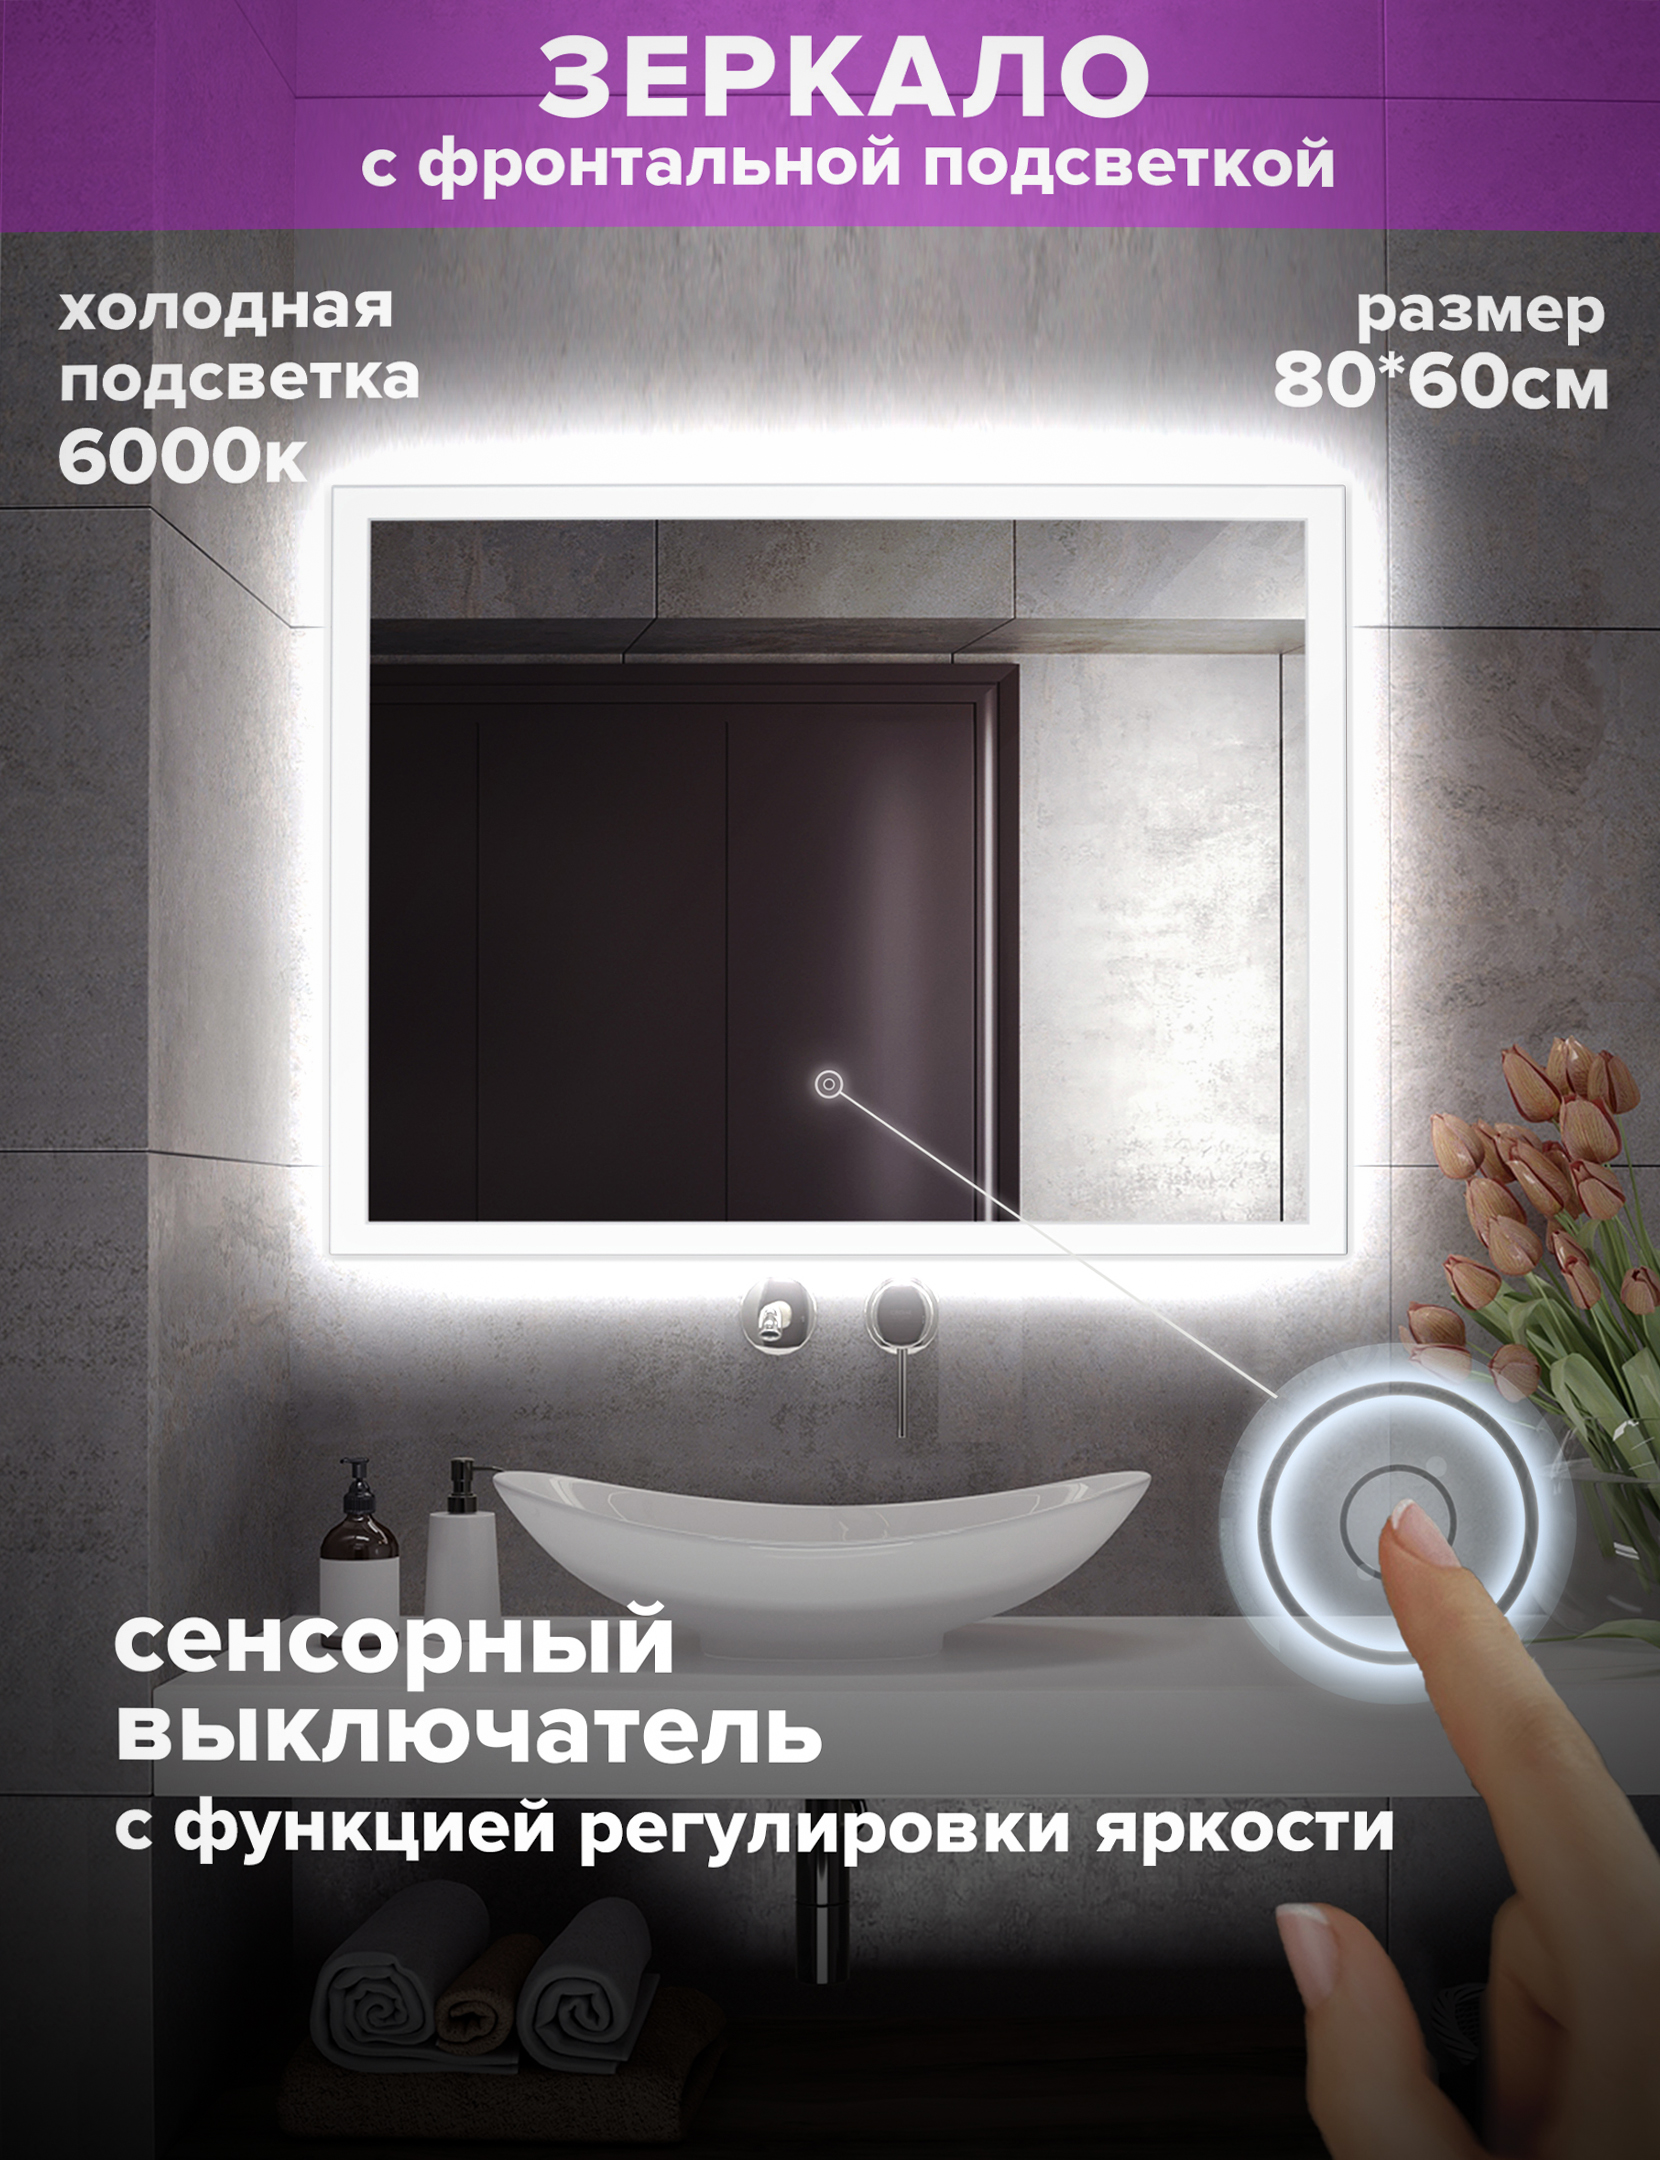 Зеркало для ванной Alfa Mirrors холодная подсветка 6000К, прямоугольное 80*60см, MNiko-86h